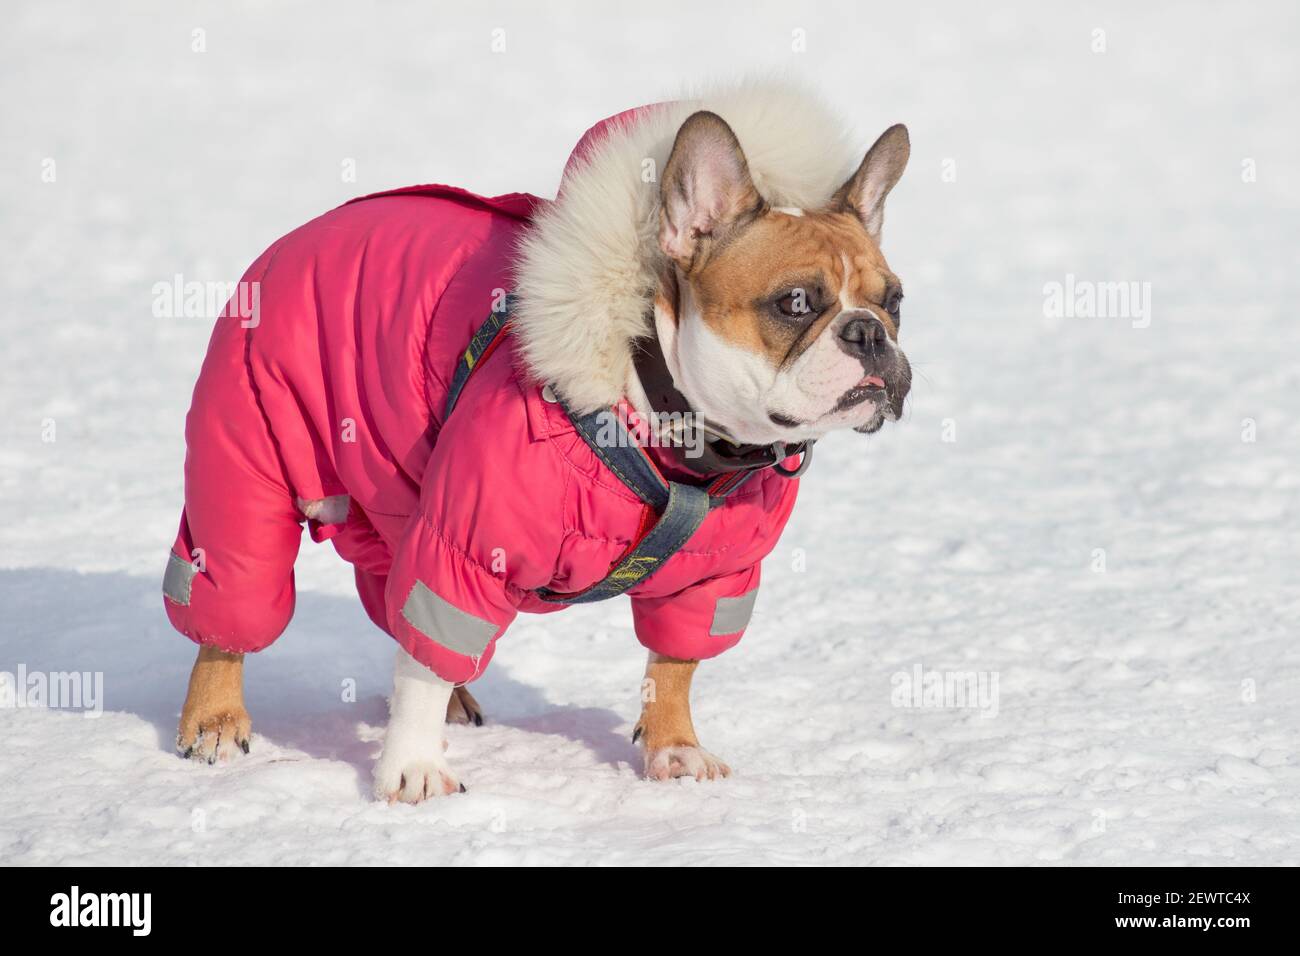 Carino bulldog francese in bellissimo abbigliamento per animali domestici è in piedi su una neve bianca nel parco invernale. Animali domestici. Cane purebred. Foto Stock